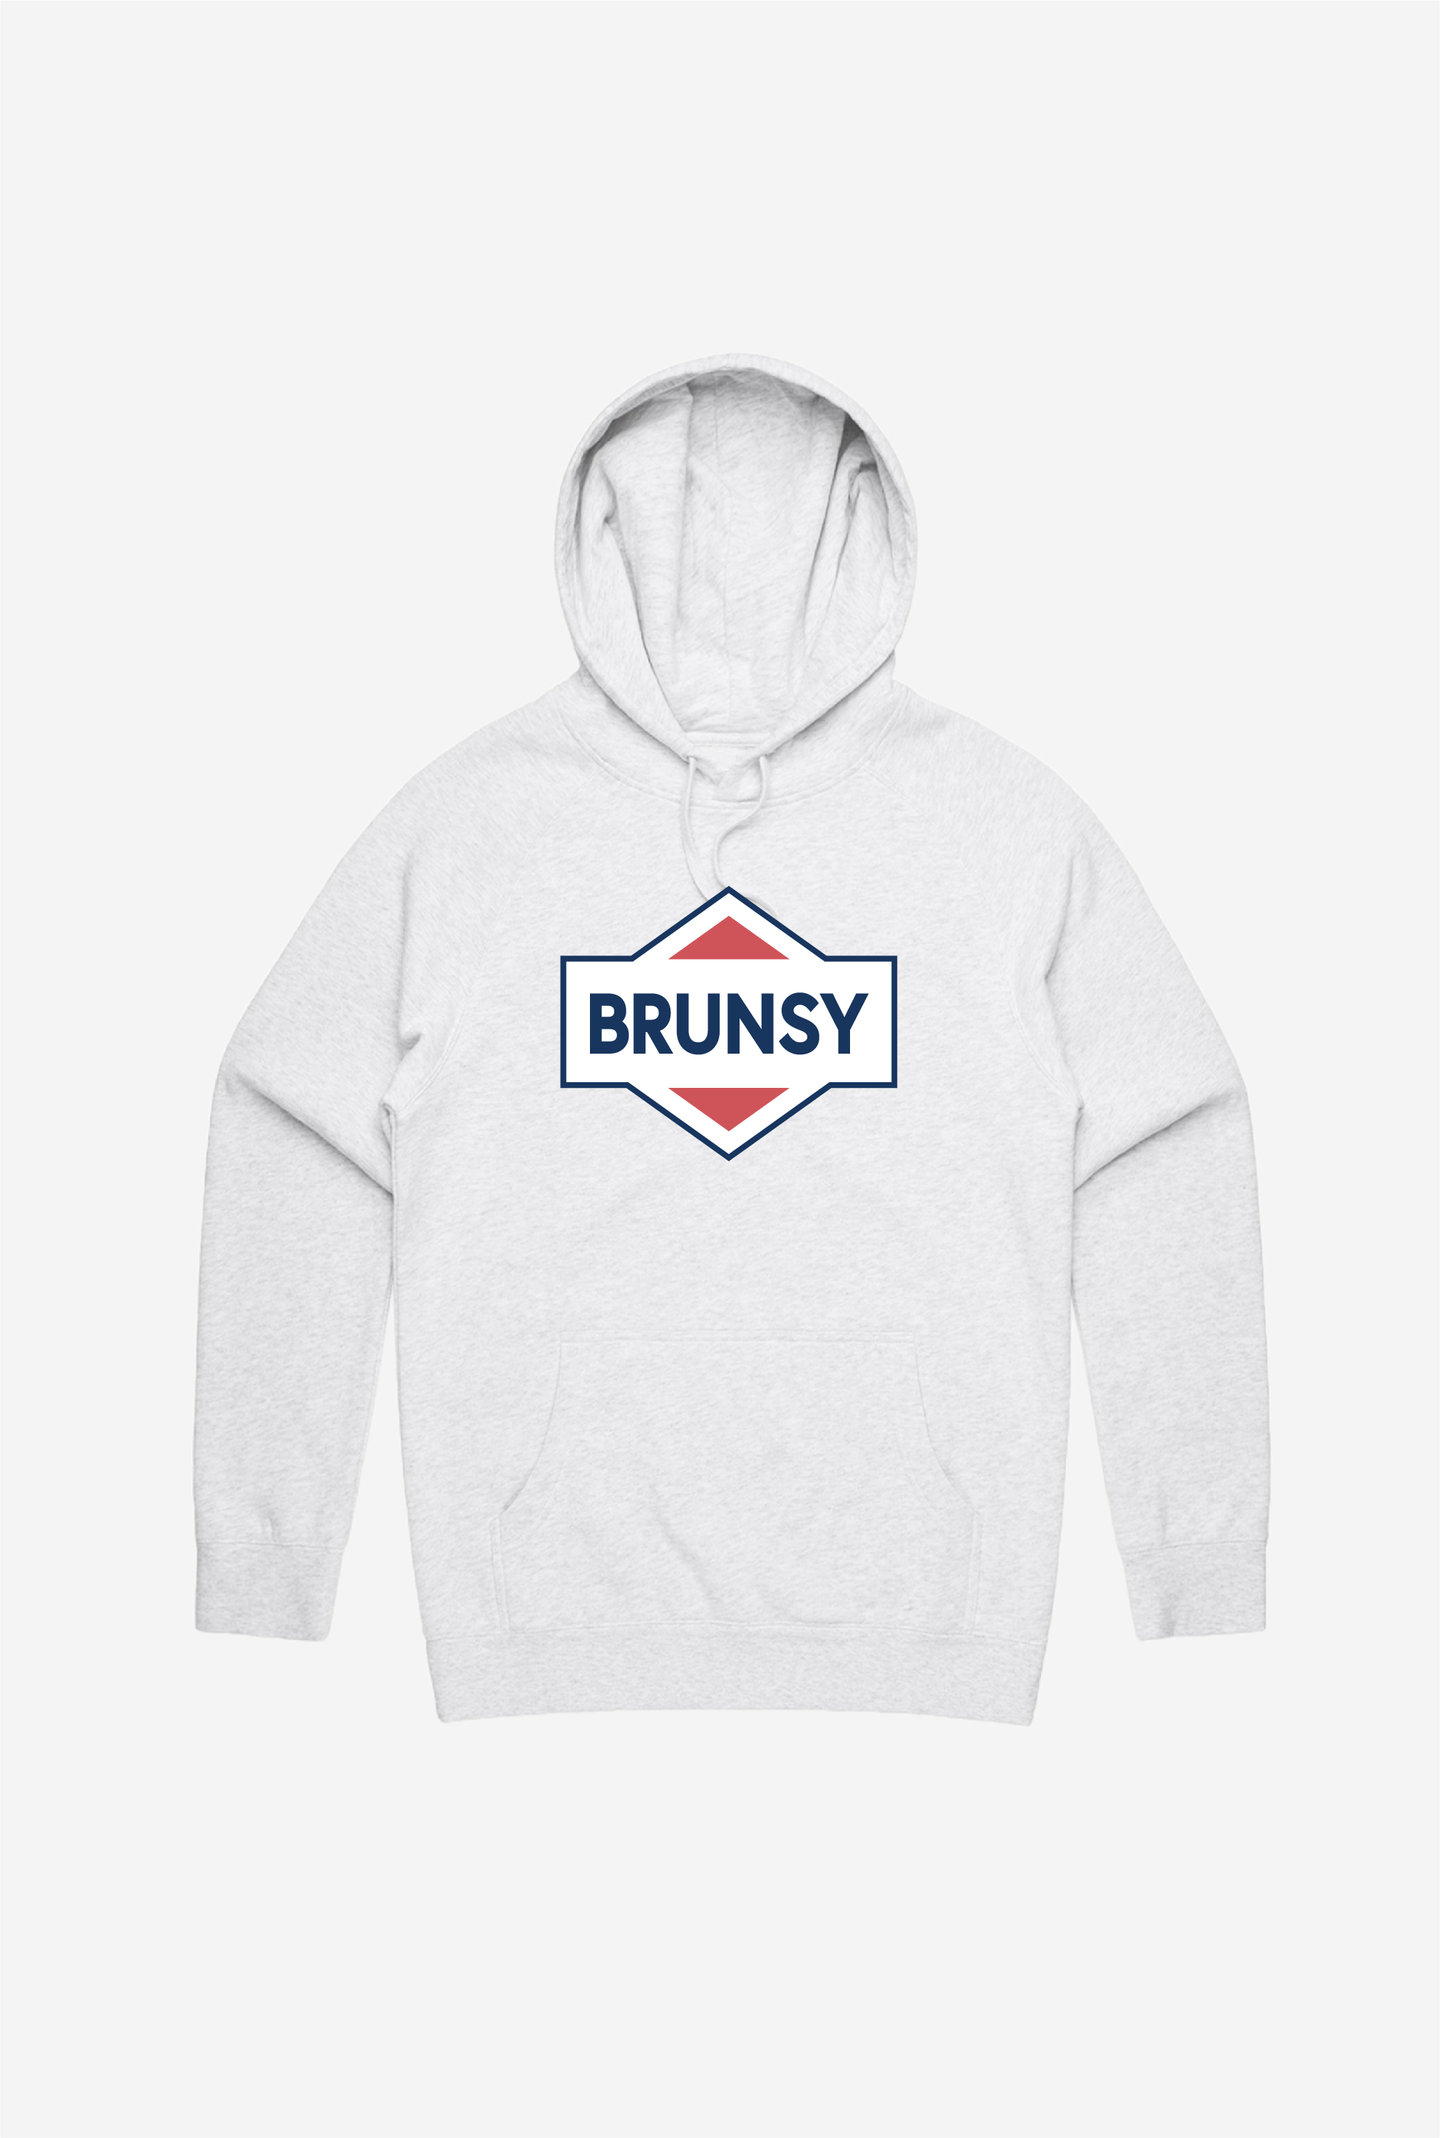 Brunsy Hoodie - Grey